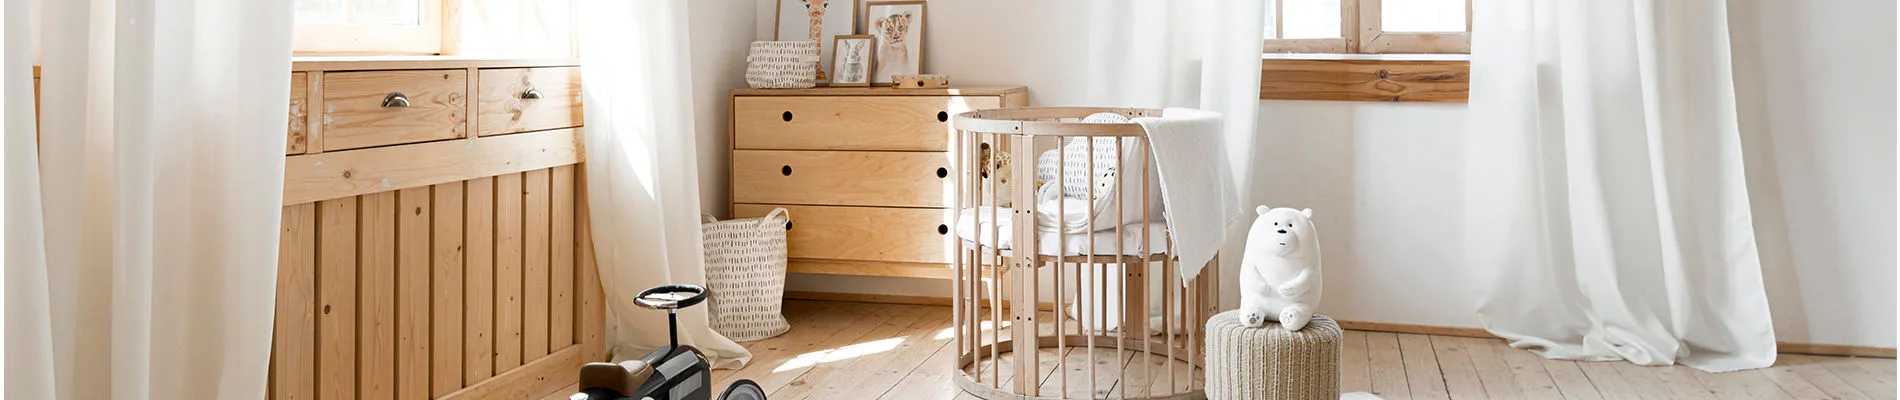 Quarto de bebê com móveis em madeira natural. Na foto há uma cômoda e um berço.